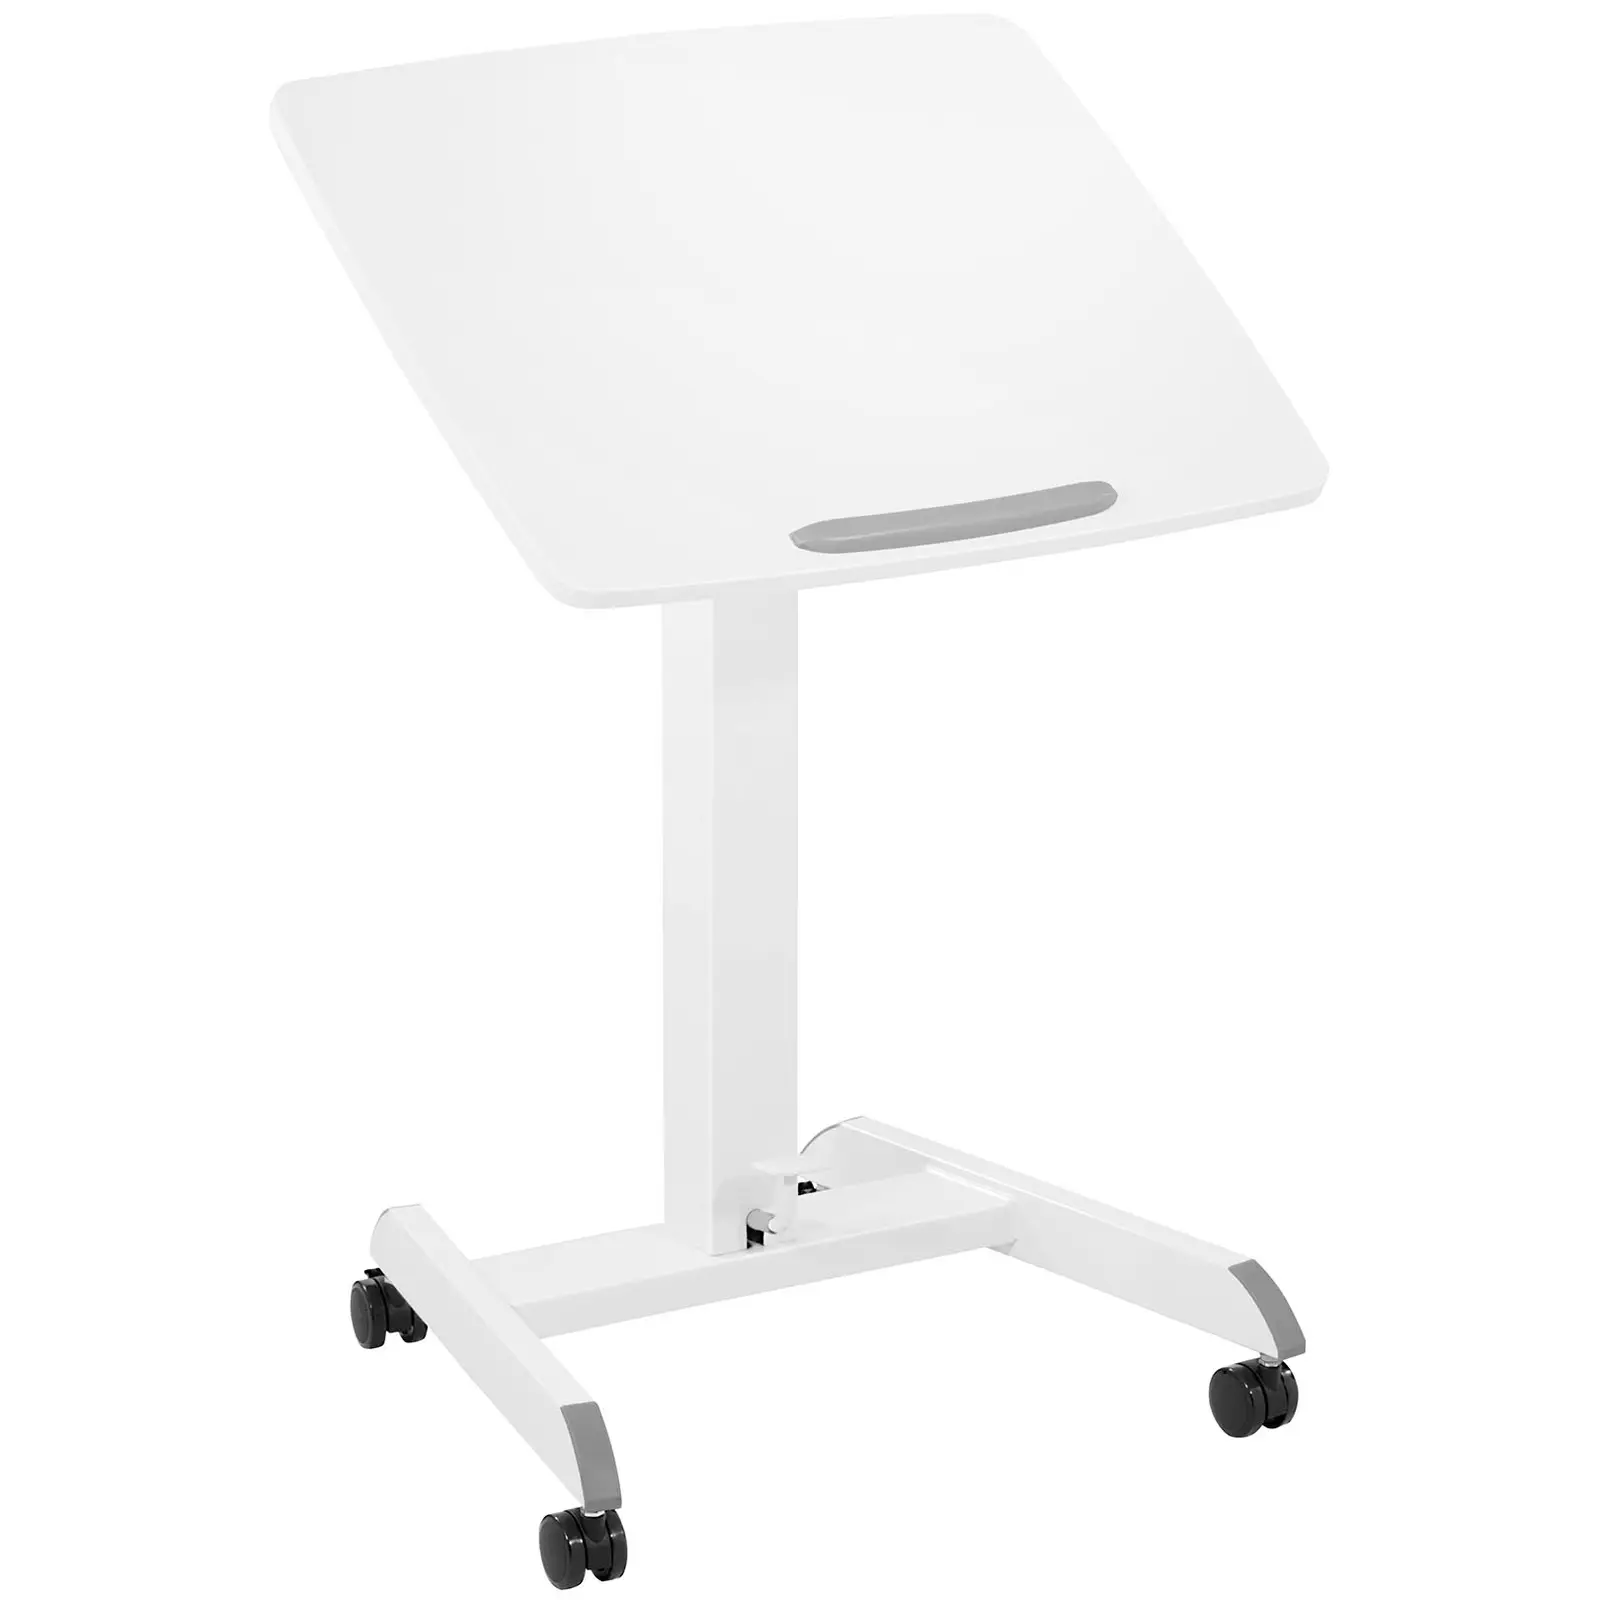 Stolik pod laptopa - 60 x 52 cm - przechylanie w zakresie 0-30° - wysokość: 760-1130 mm